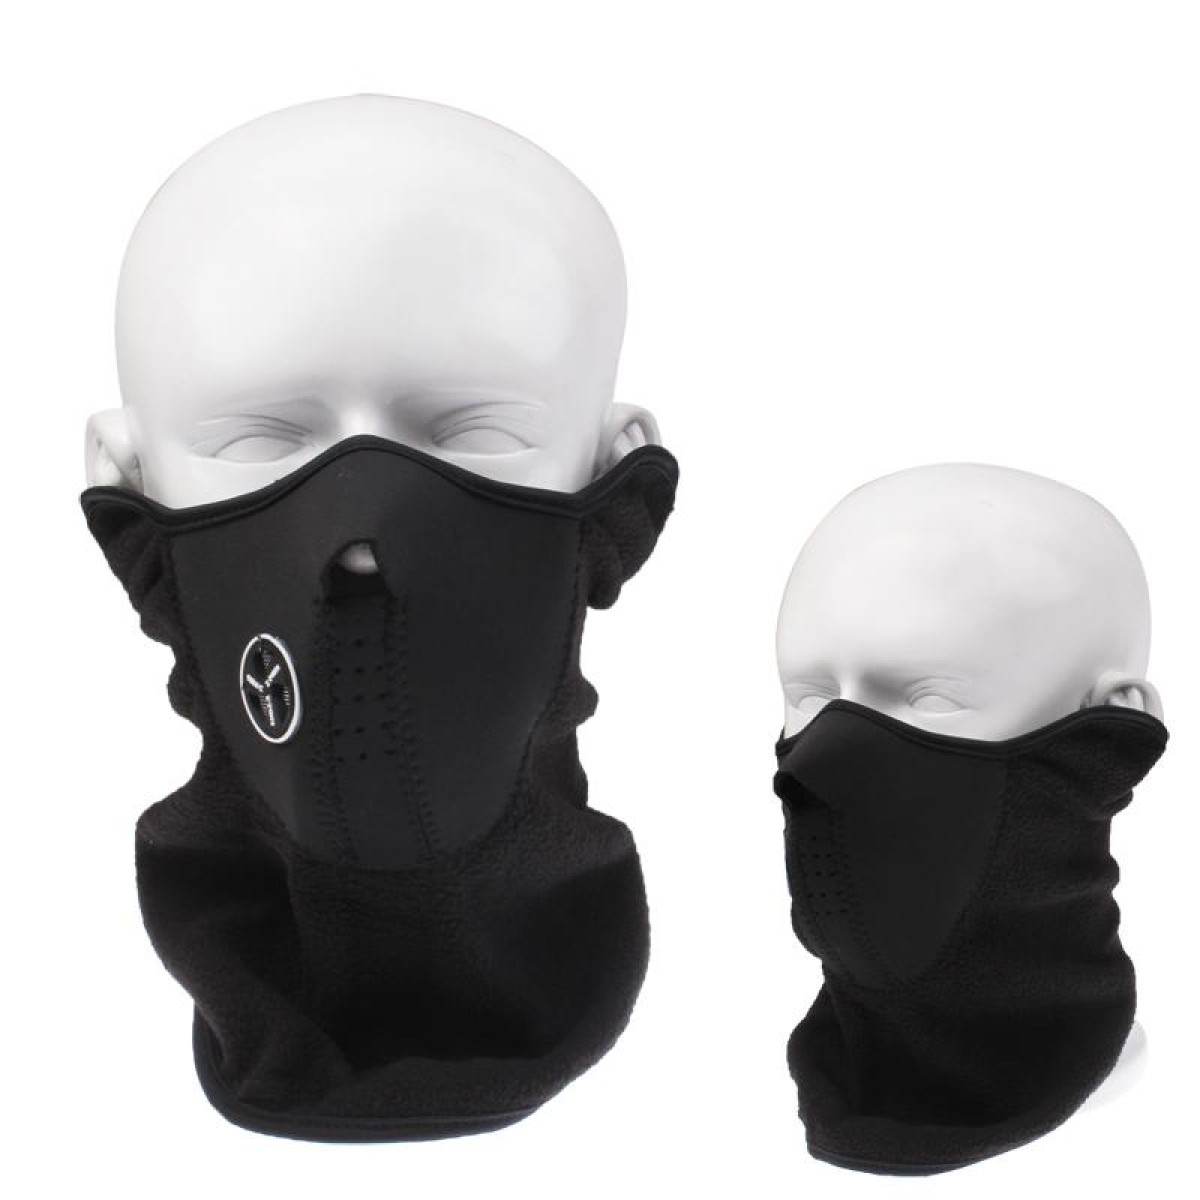 Outdoor Ventilation Prevention Half Face Mask(Black)